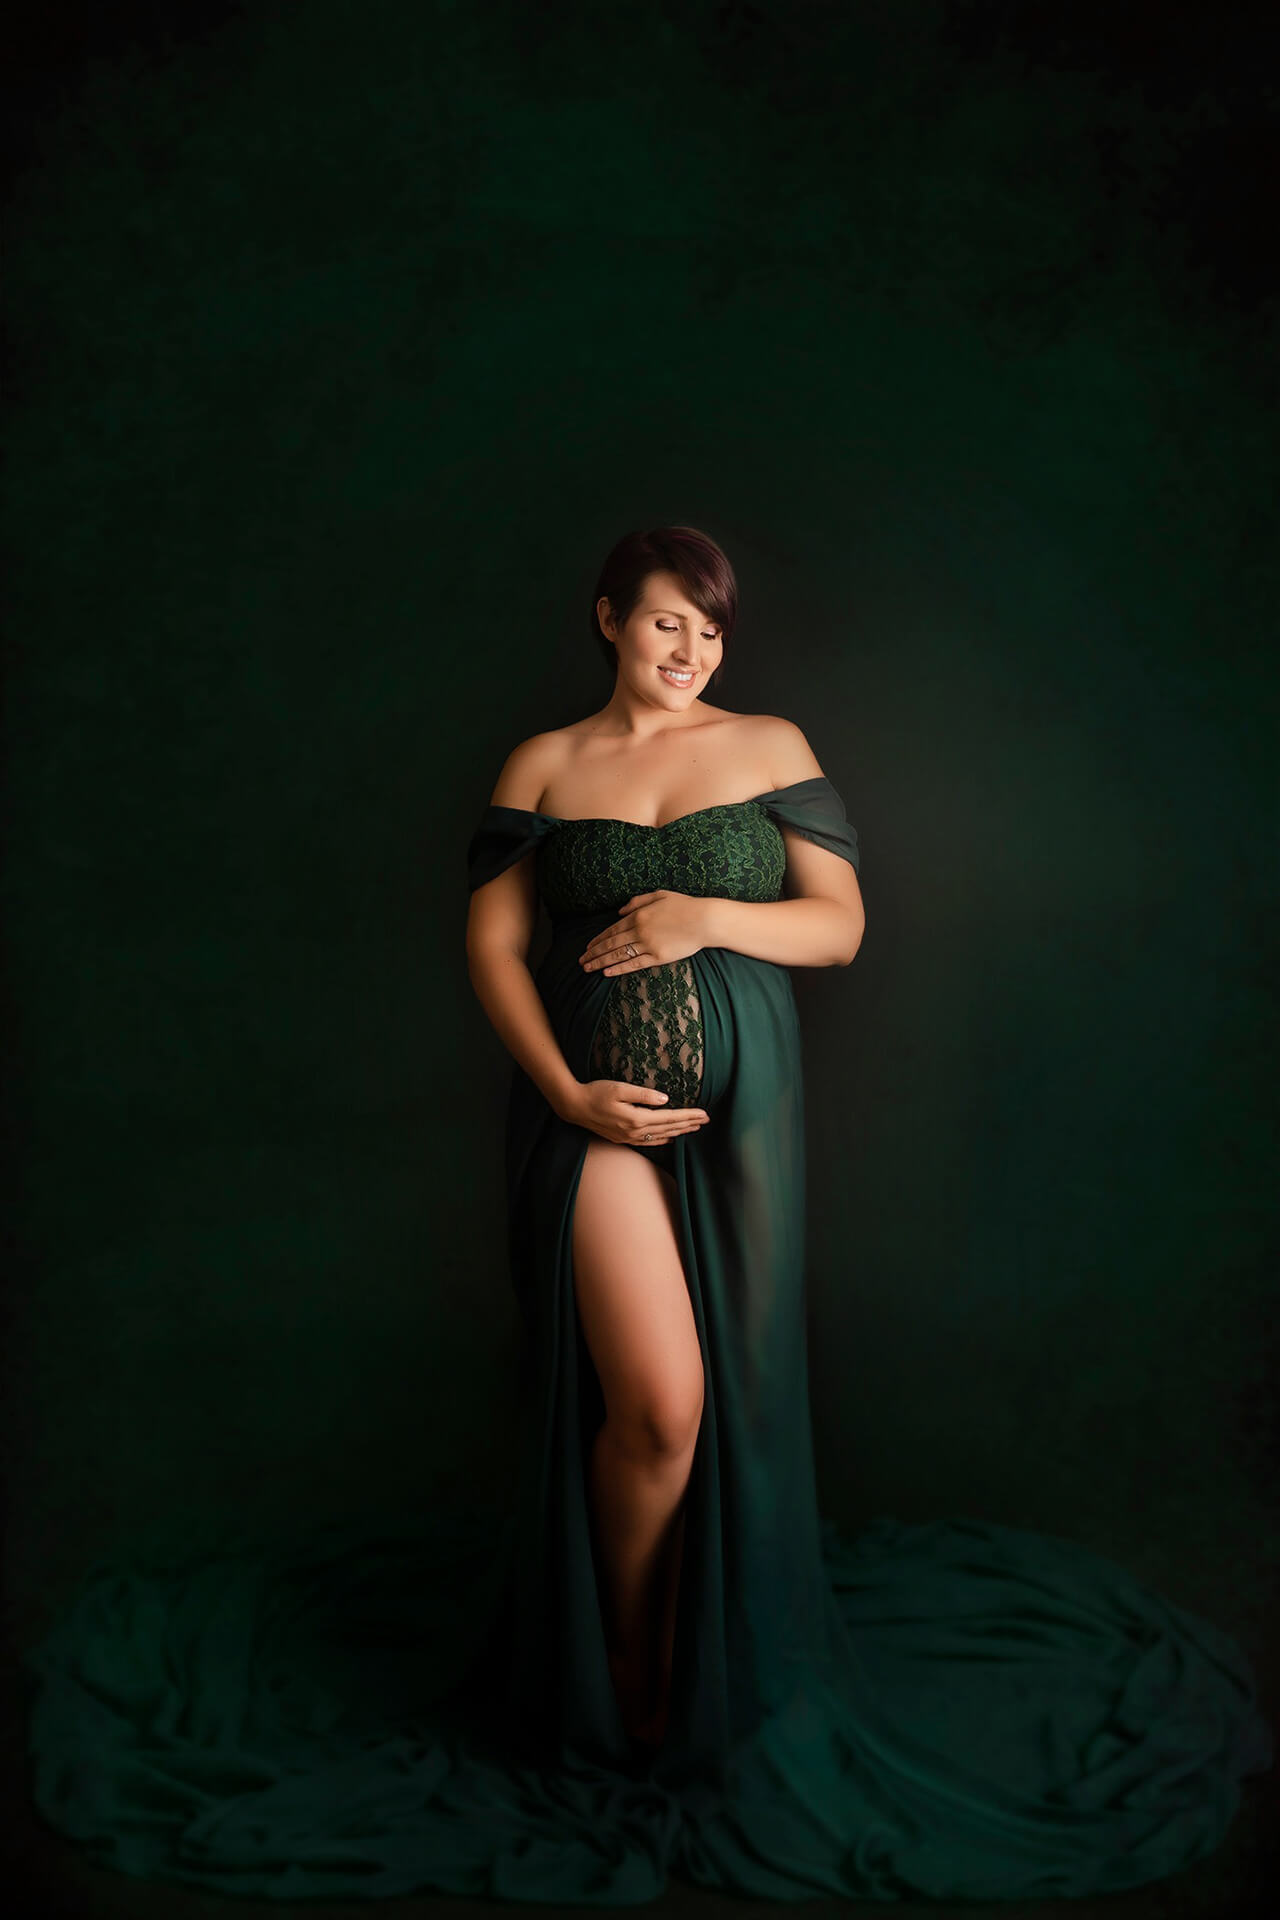 Une femme enceinte vêtue d'une robe verte posant pour une photo.